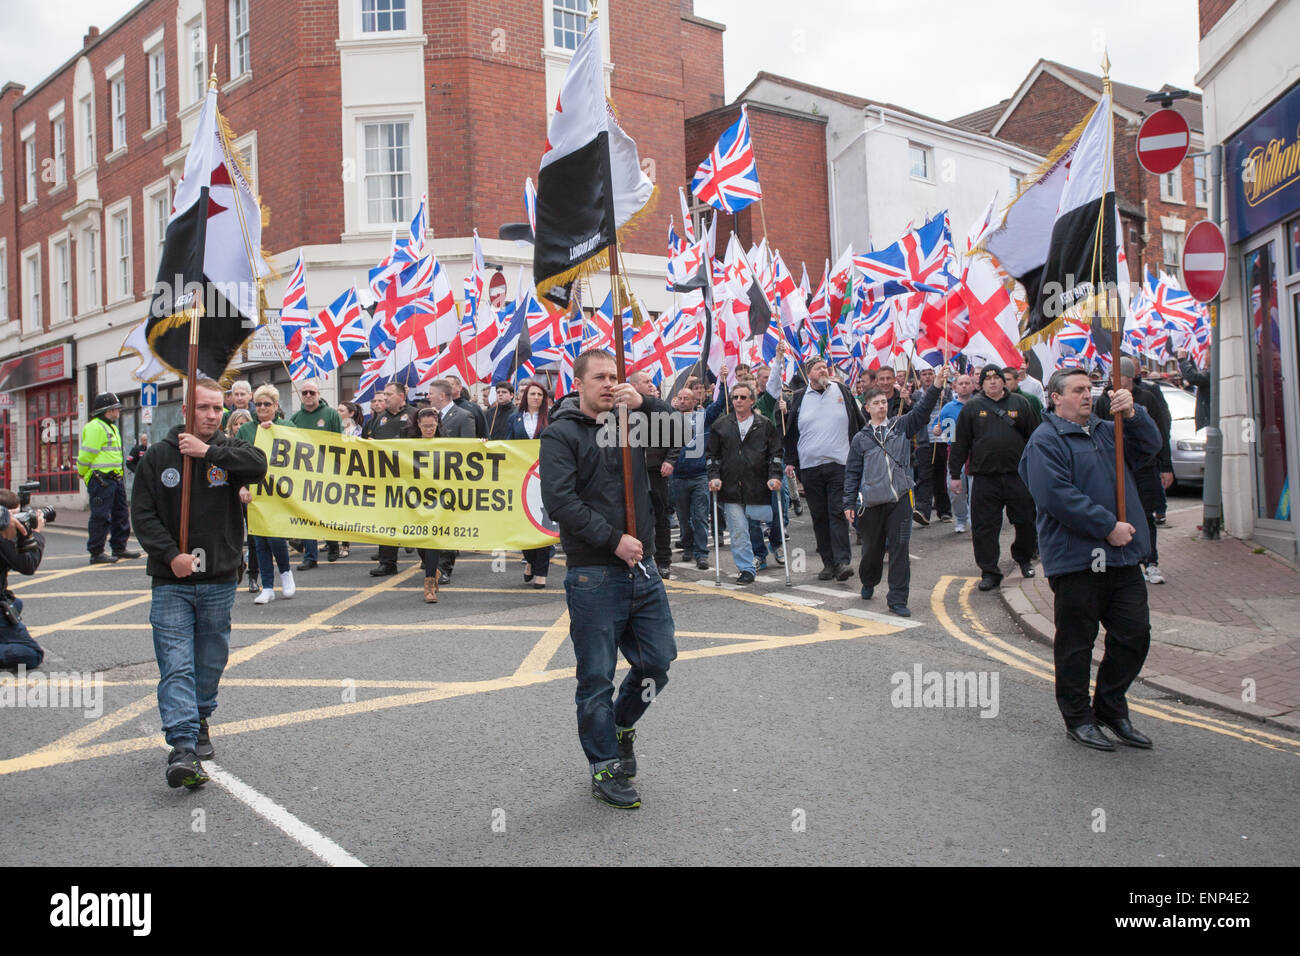 Gran Bretaña primero - un partido político nacionalista de extrema derecha - demostrar en Dudley, West Midlands, Reino Unido Foto de stock